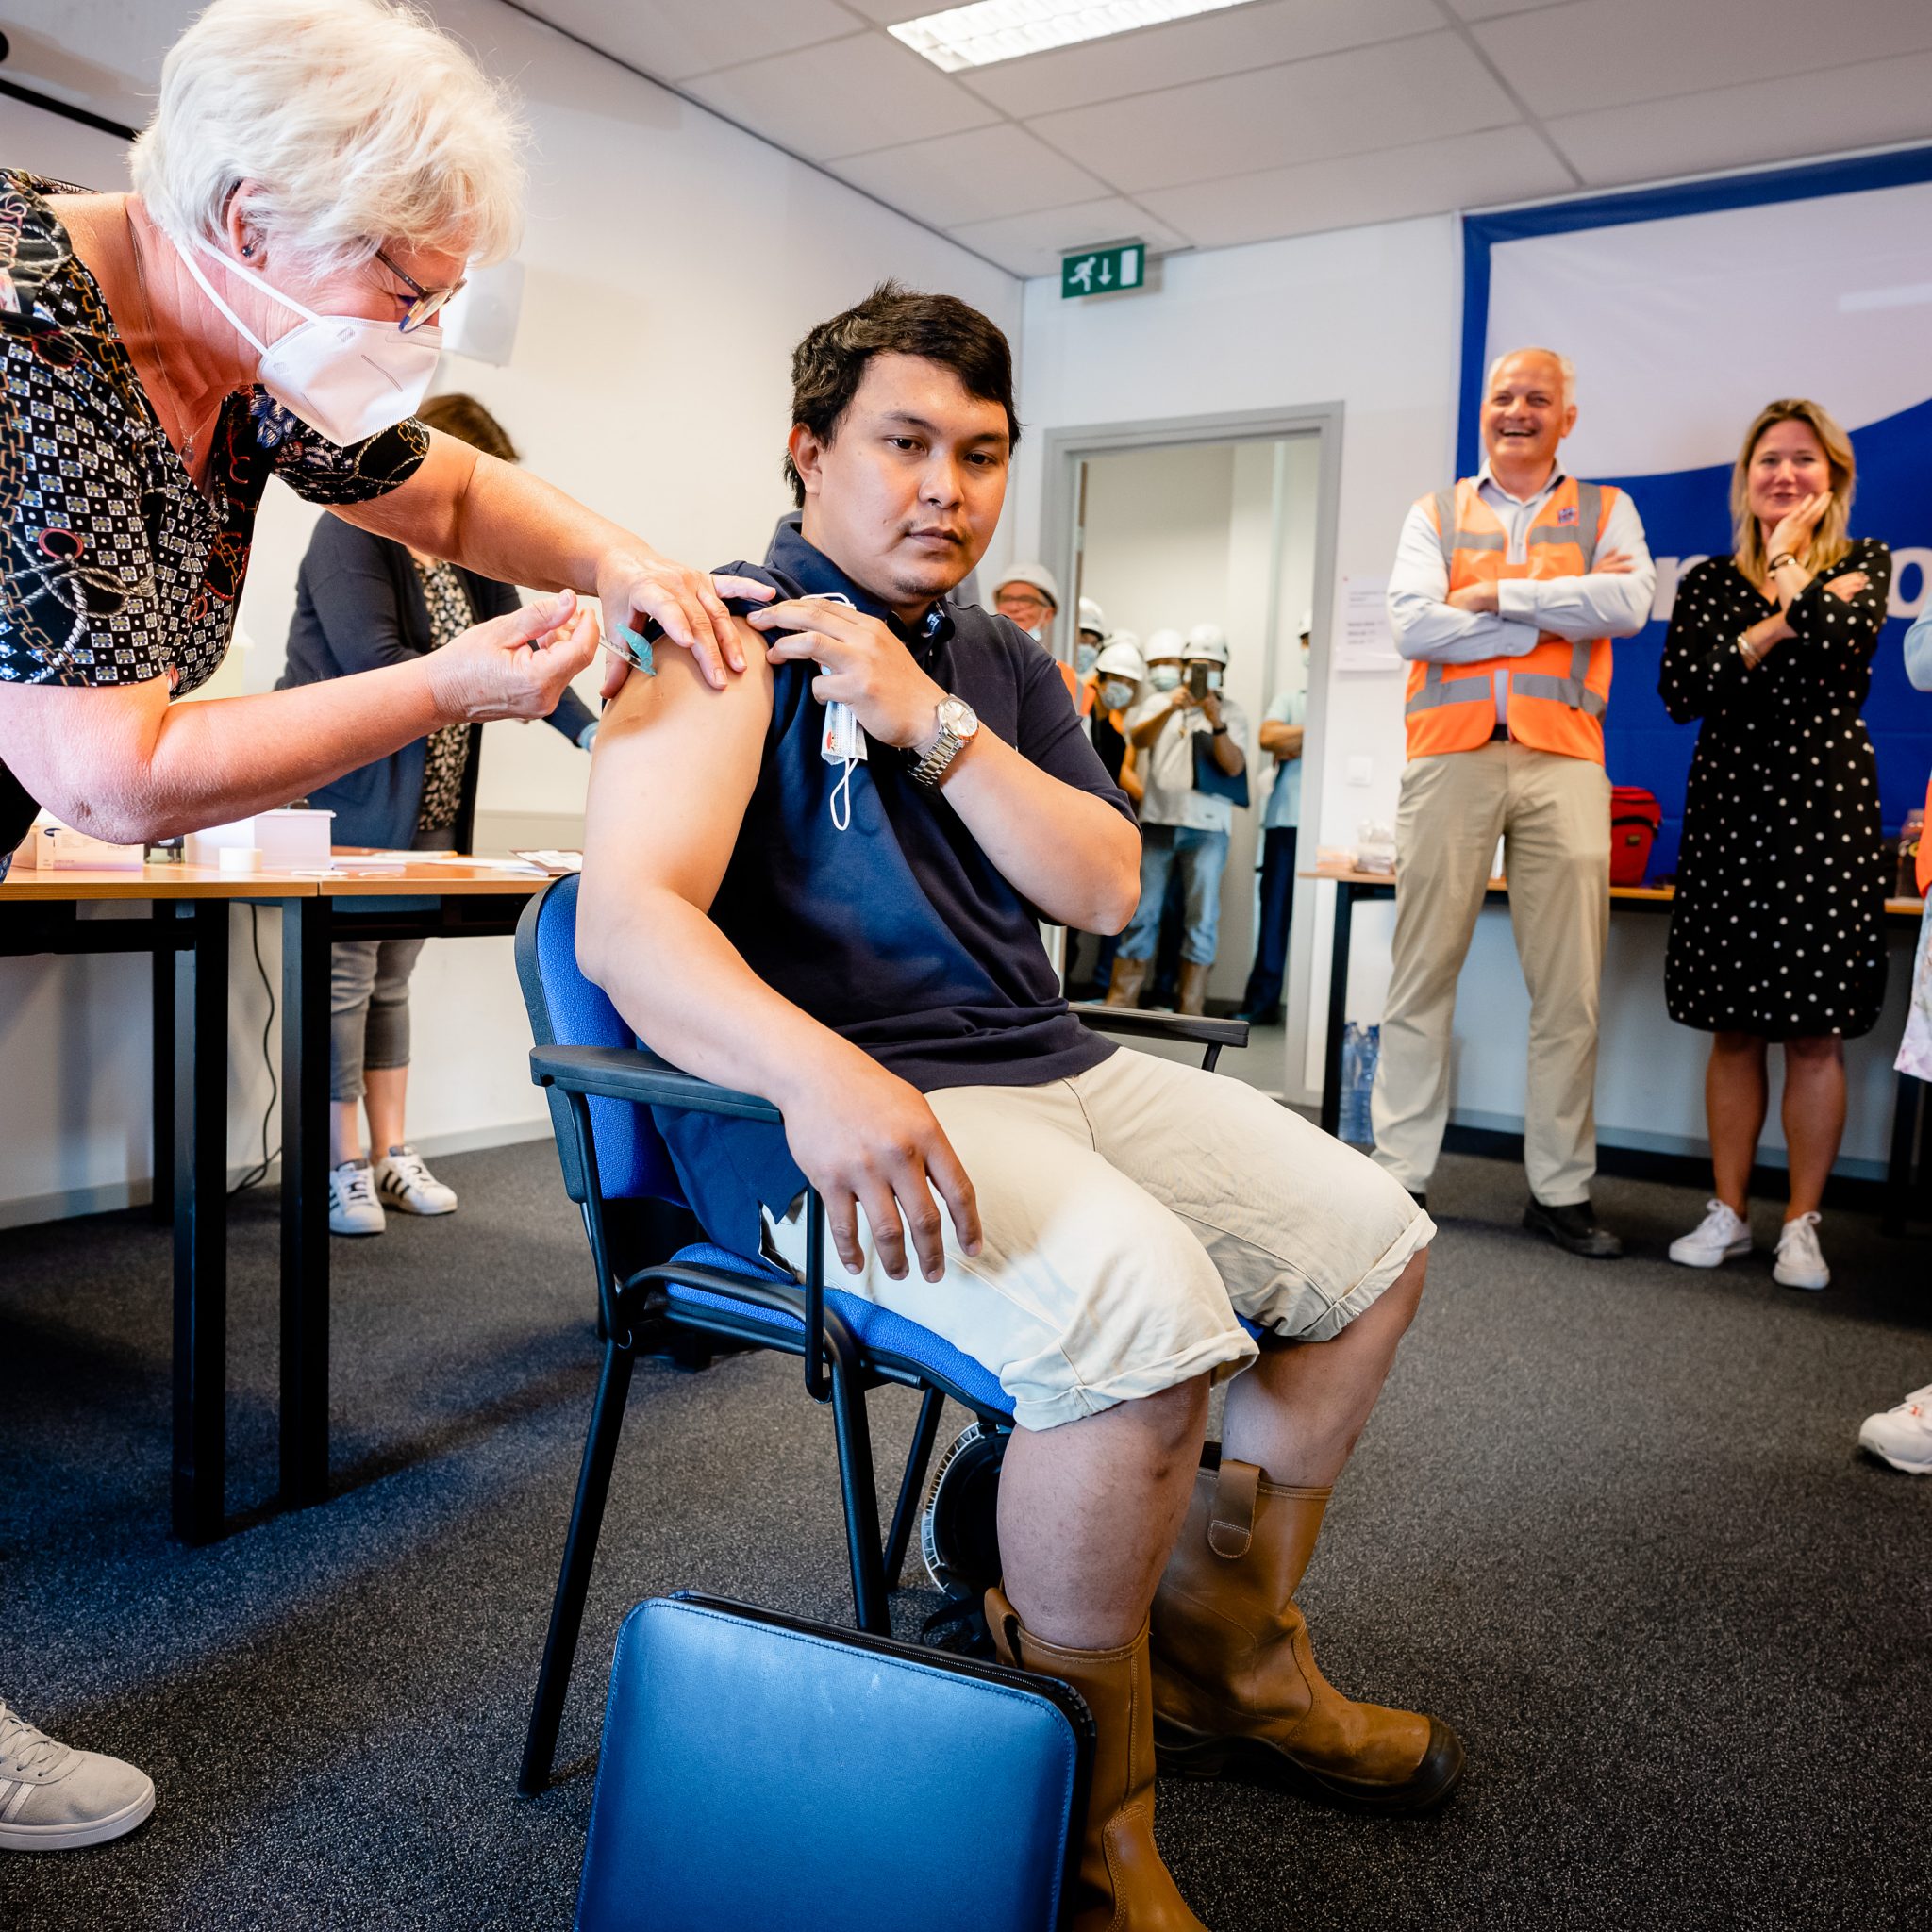 Tijdens de vaccinatiecampagne wordt een zeevarenden geprikt onder toeziend oog van Annet Koster KVNR (2e van rechts) en toenmalig minister van Infrastructuur en Waterstaat Cora van Nieuwenhuizen (rechts). (Foto KVNR)